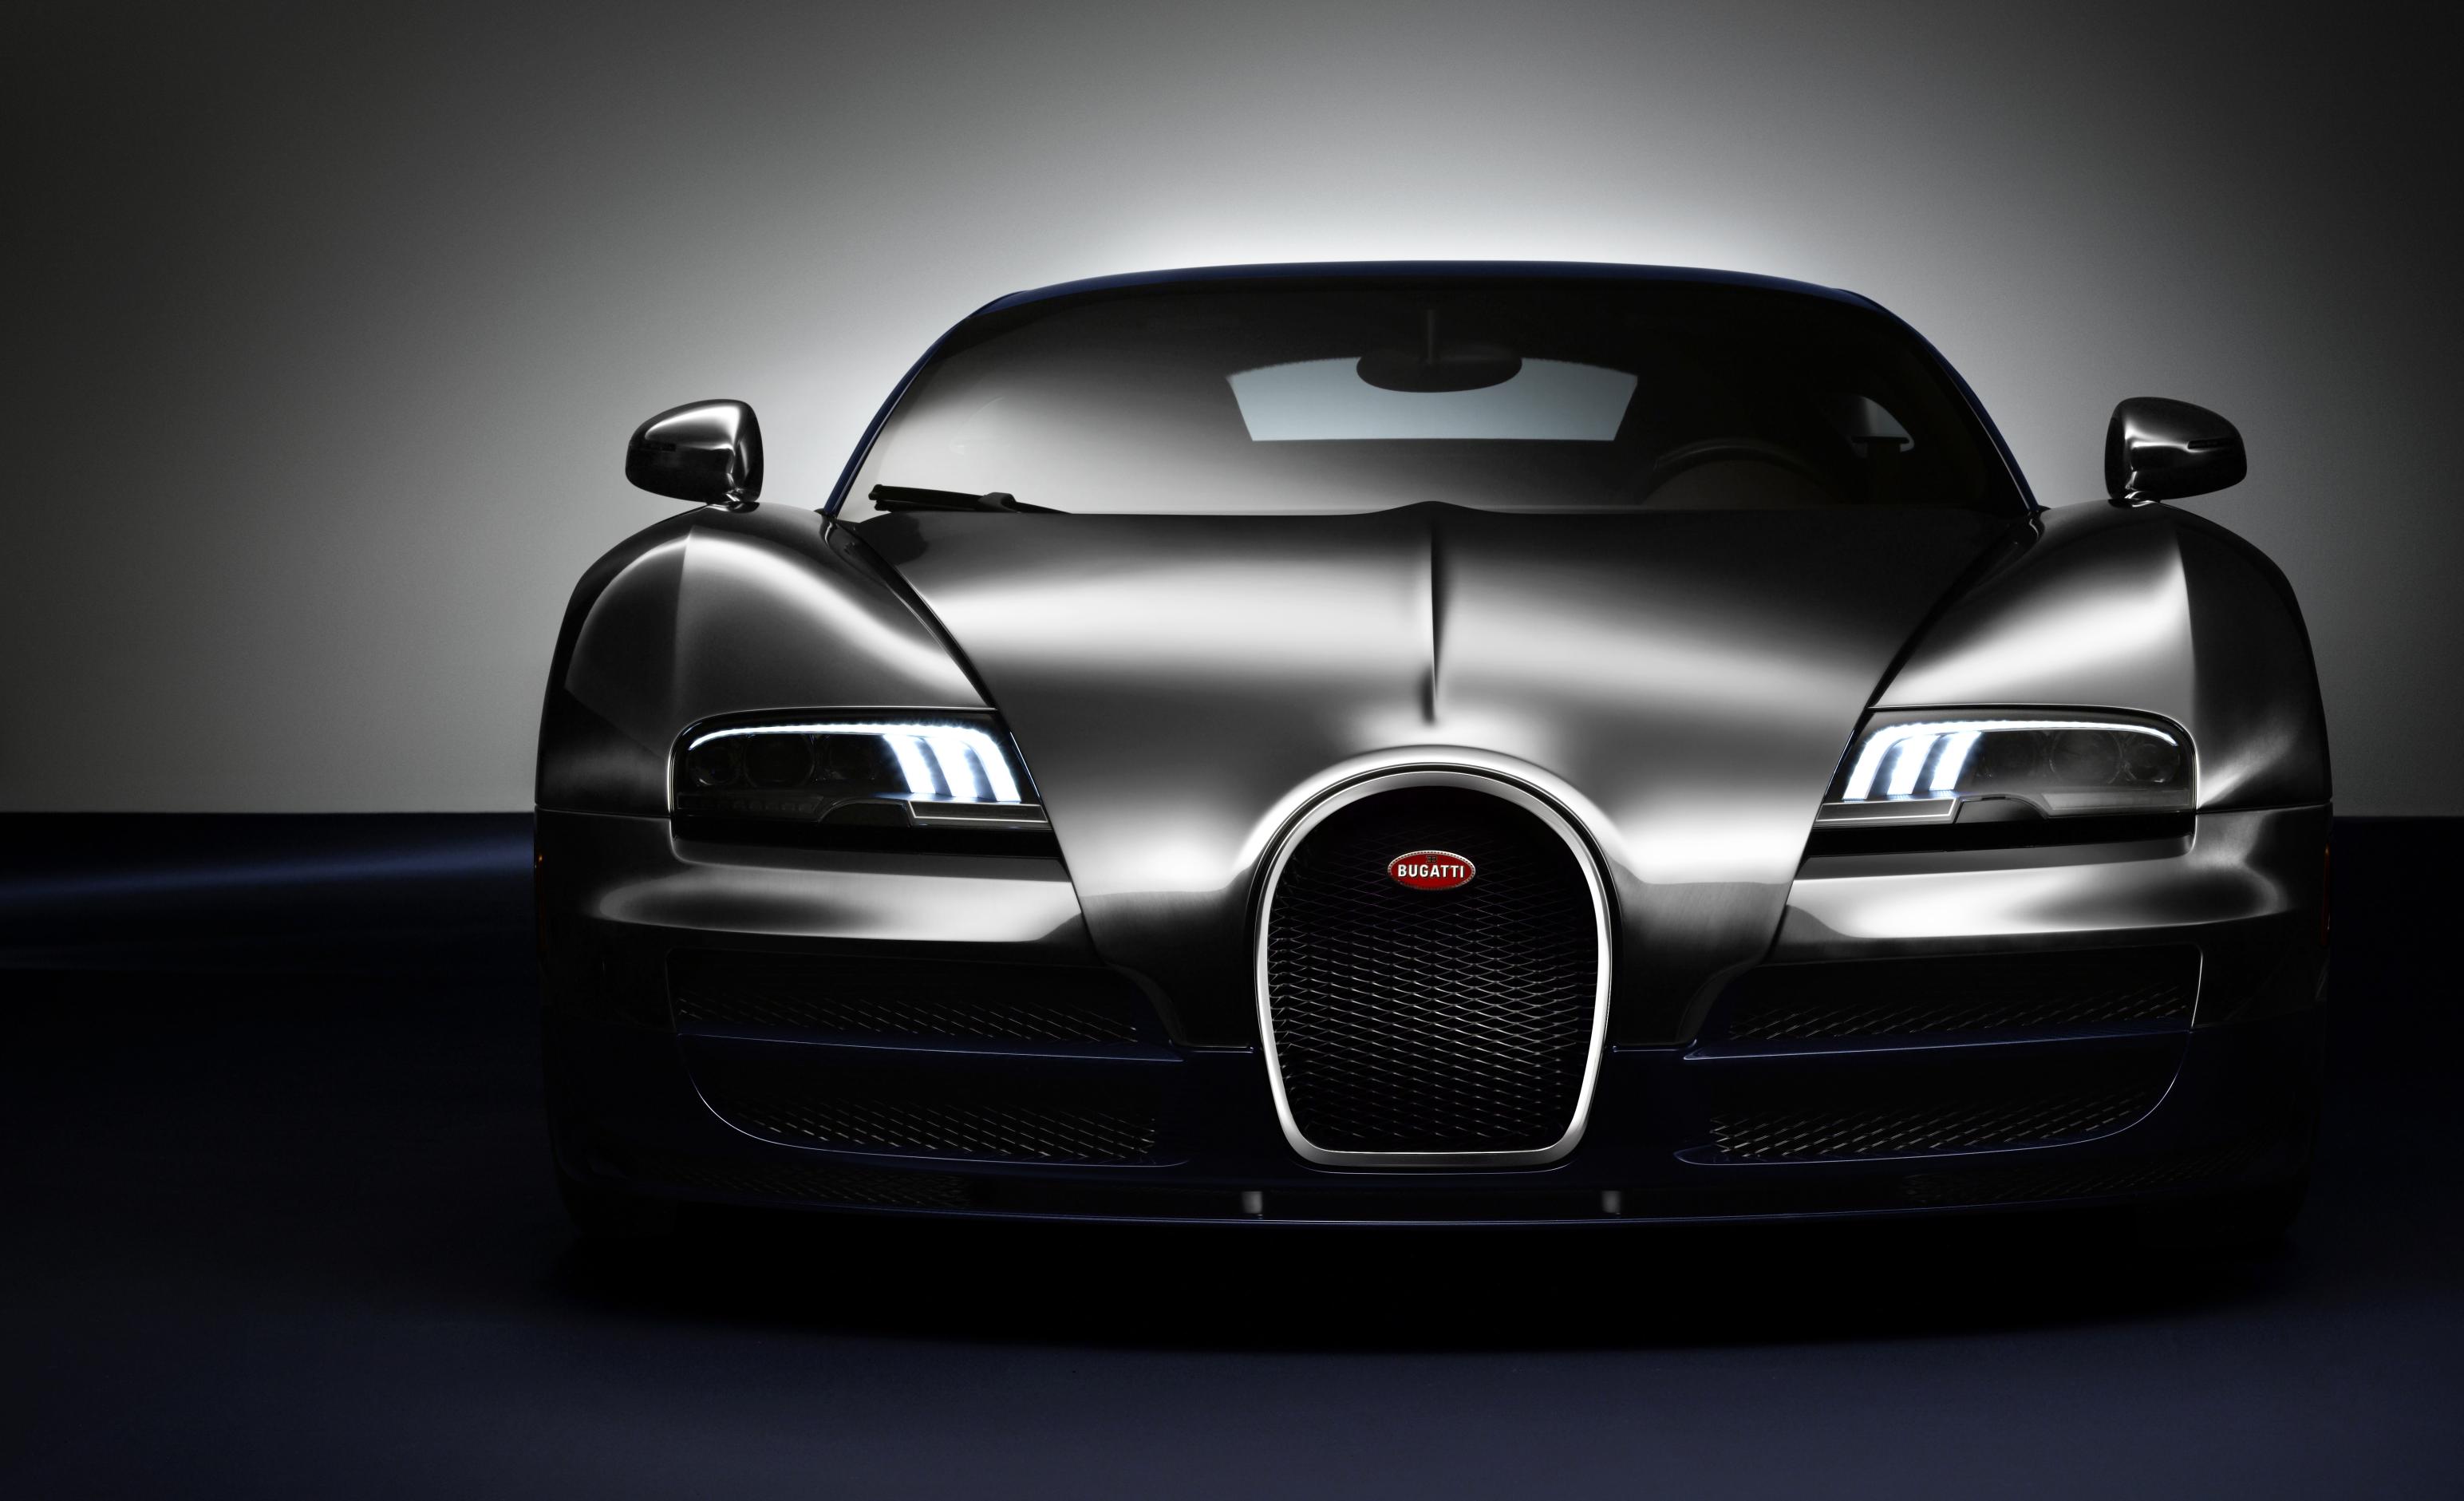 003_Legend_Ettore_Bugatti_front